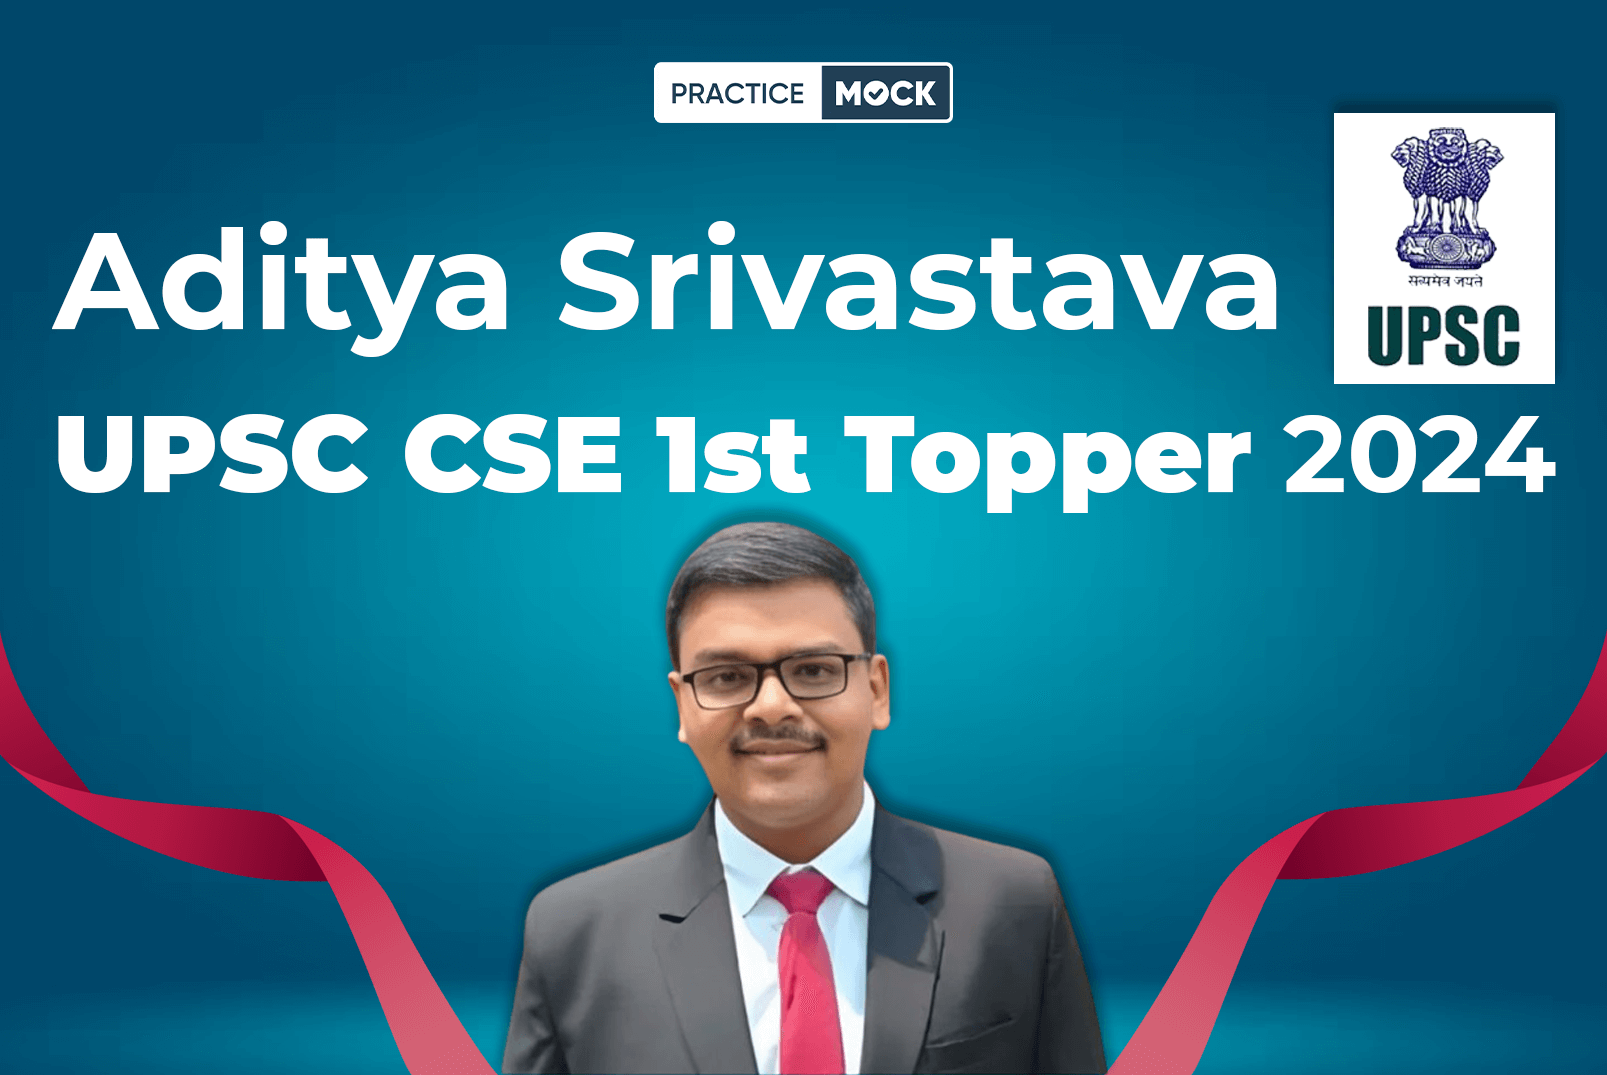 Aditya Srivastava UPSC CSE 1st Topper 2024